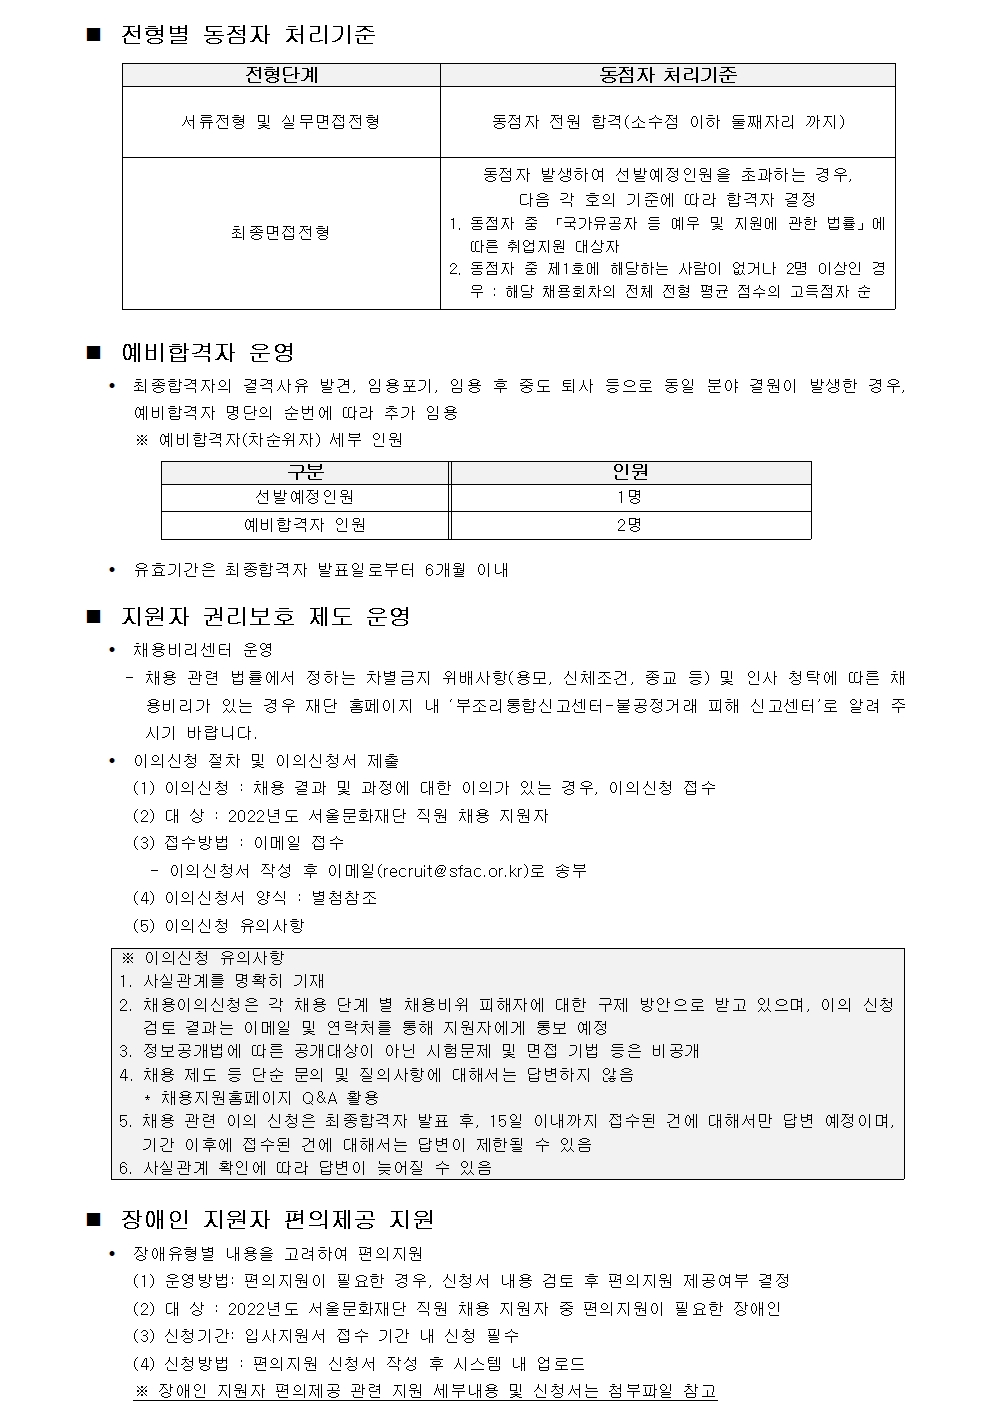 [서울문화재단] 2022년 제2차 직원 공개채용 공고문004